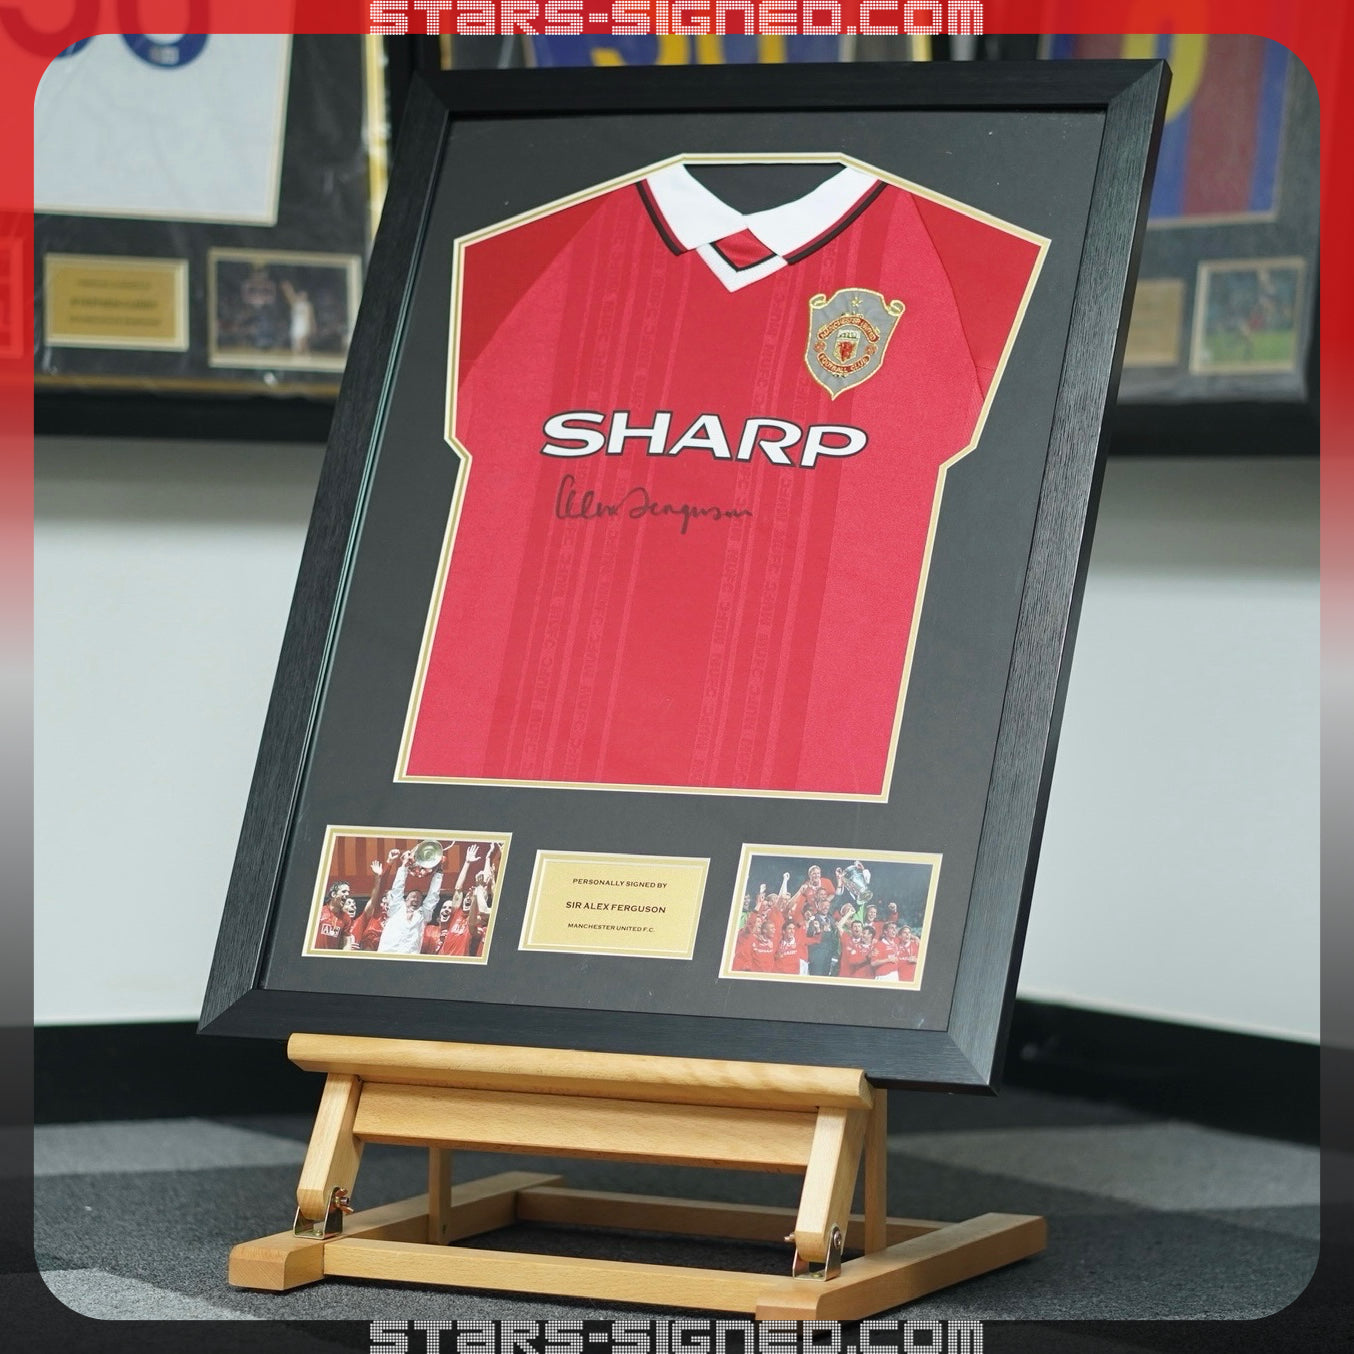 費格遜 Sir Alex Ferguson 曼聯1999歐冠球衣 (前簽)